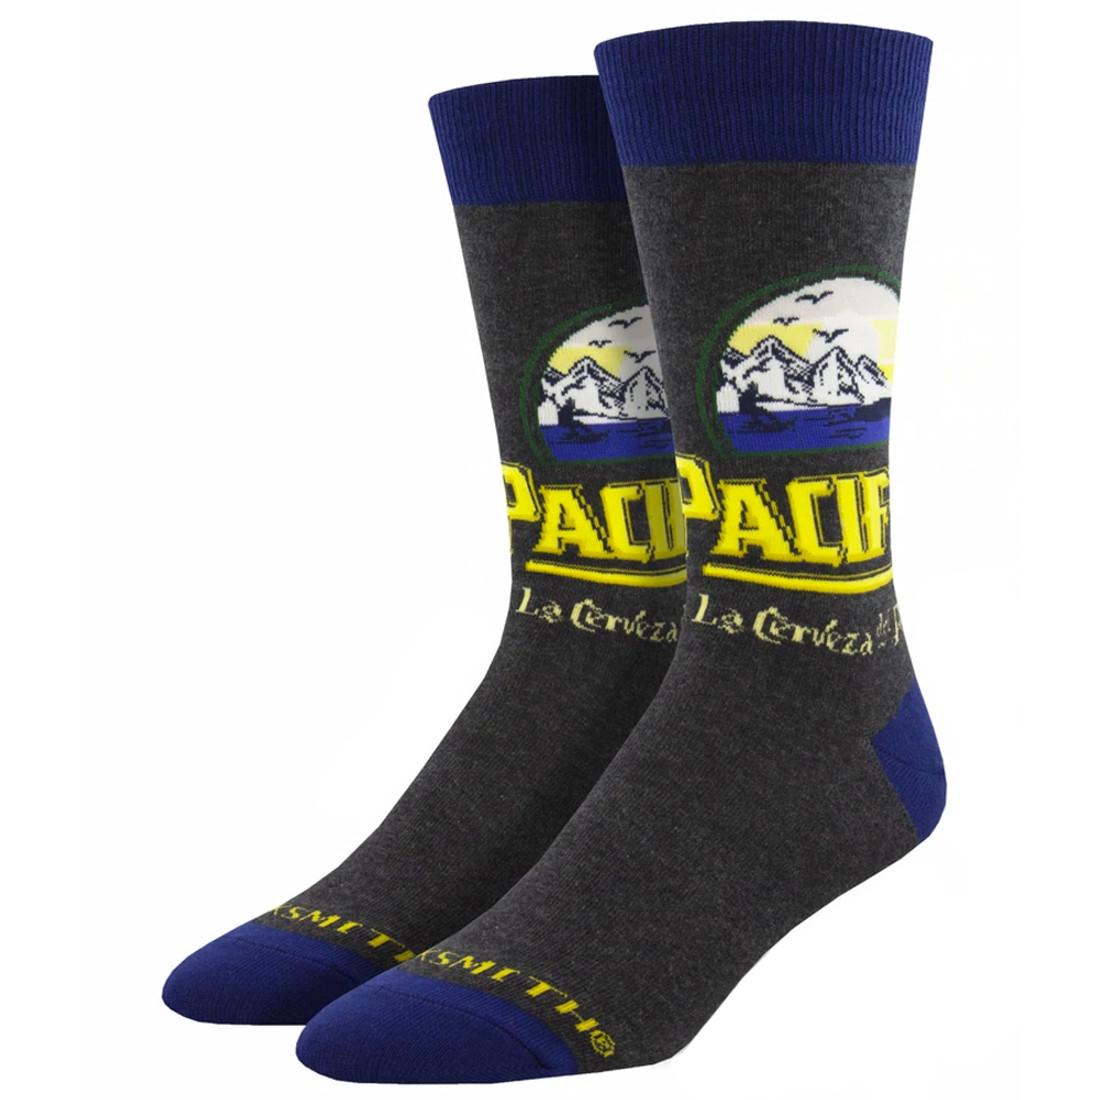 Pacifico Seascape Men's Crew Socks